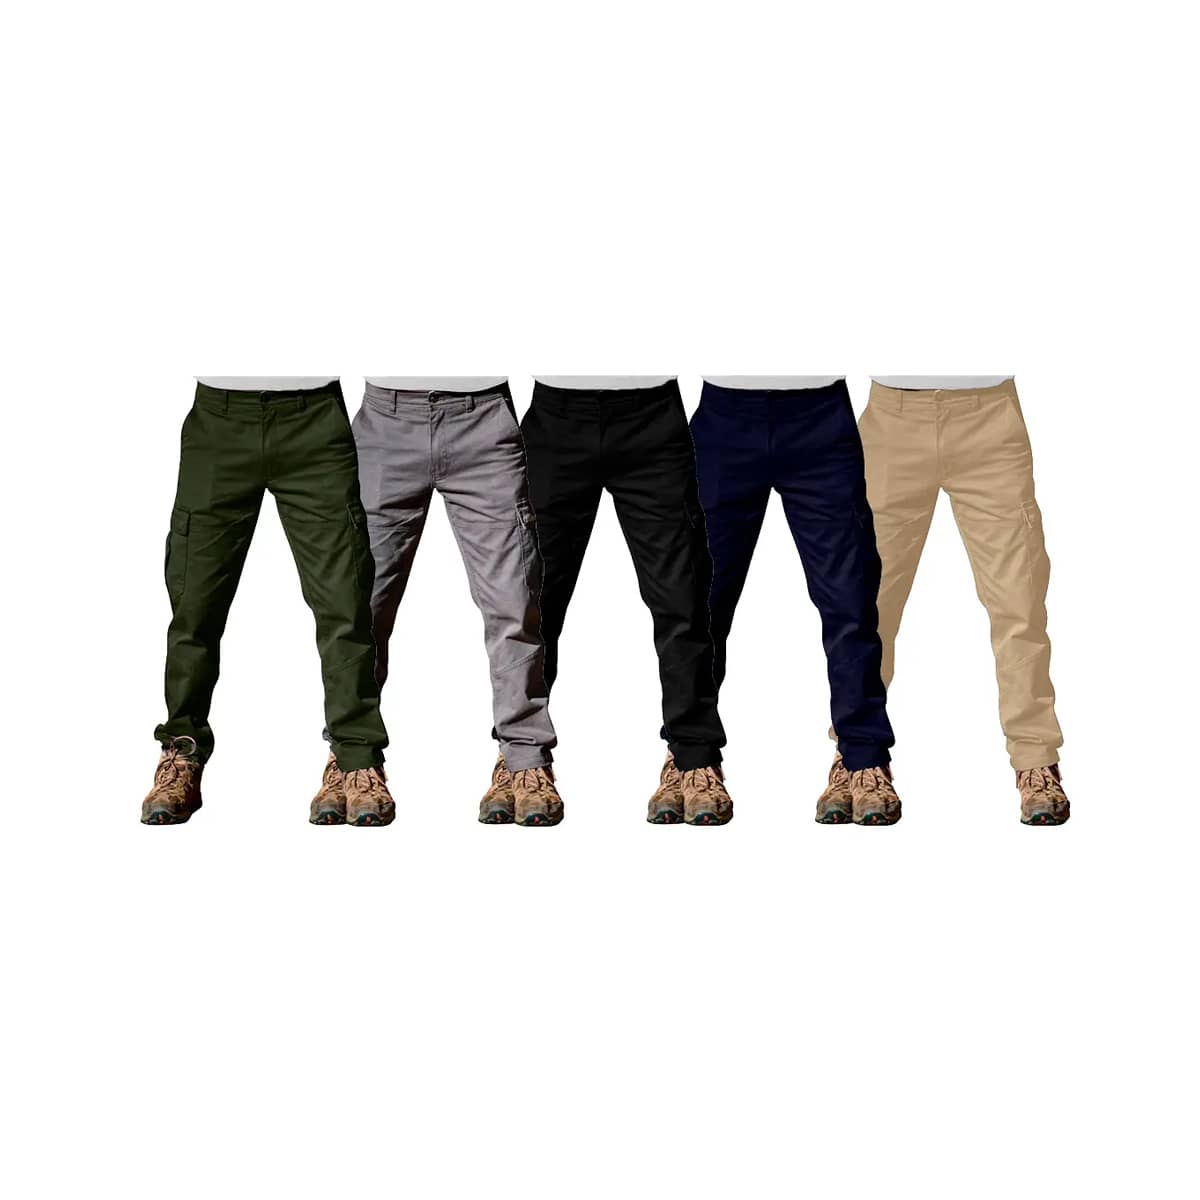 Pantalon de trabajo 250 gr/m2 - Varios colores - Uniformes 48